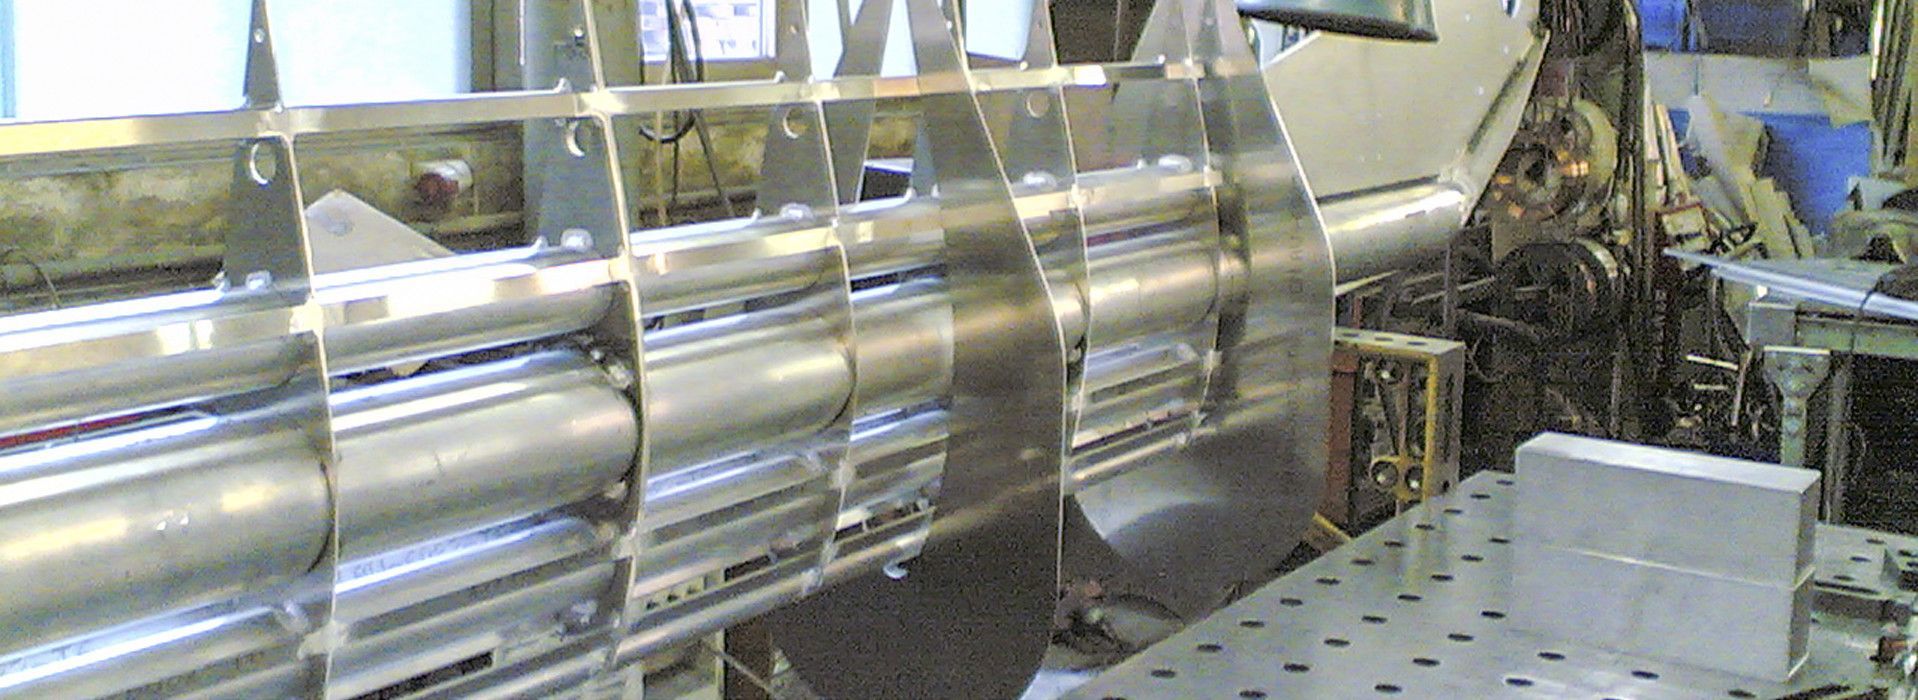 Metallindustriewerk Heinr. Hofmann GmbH Schweißen 02